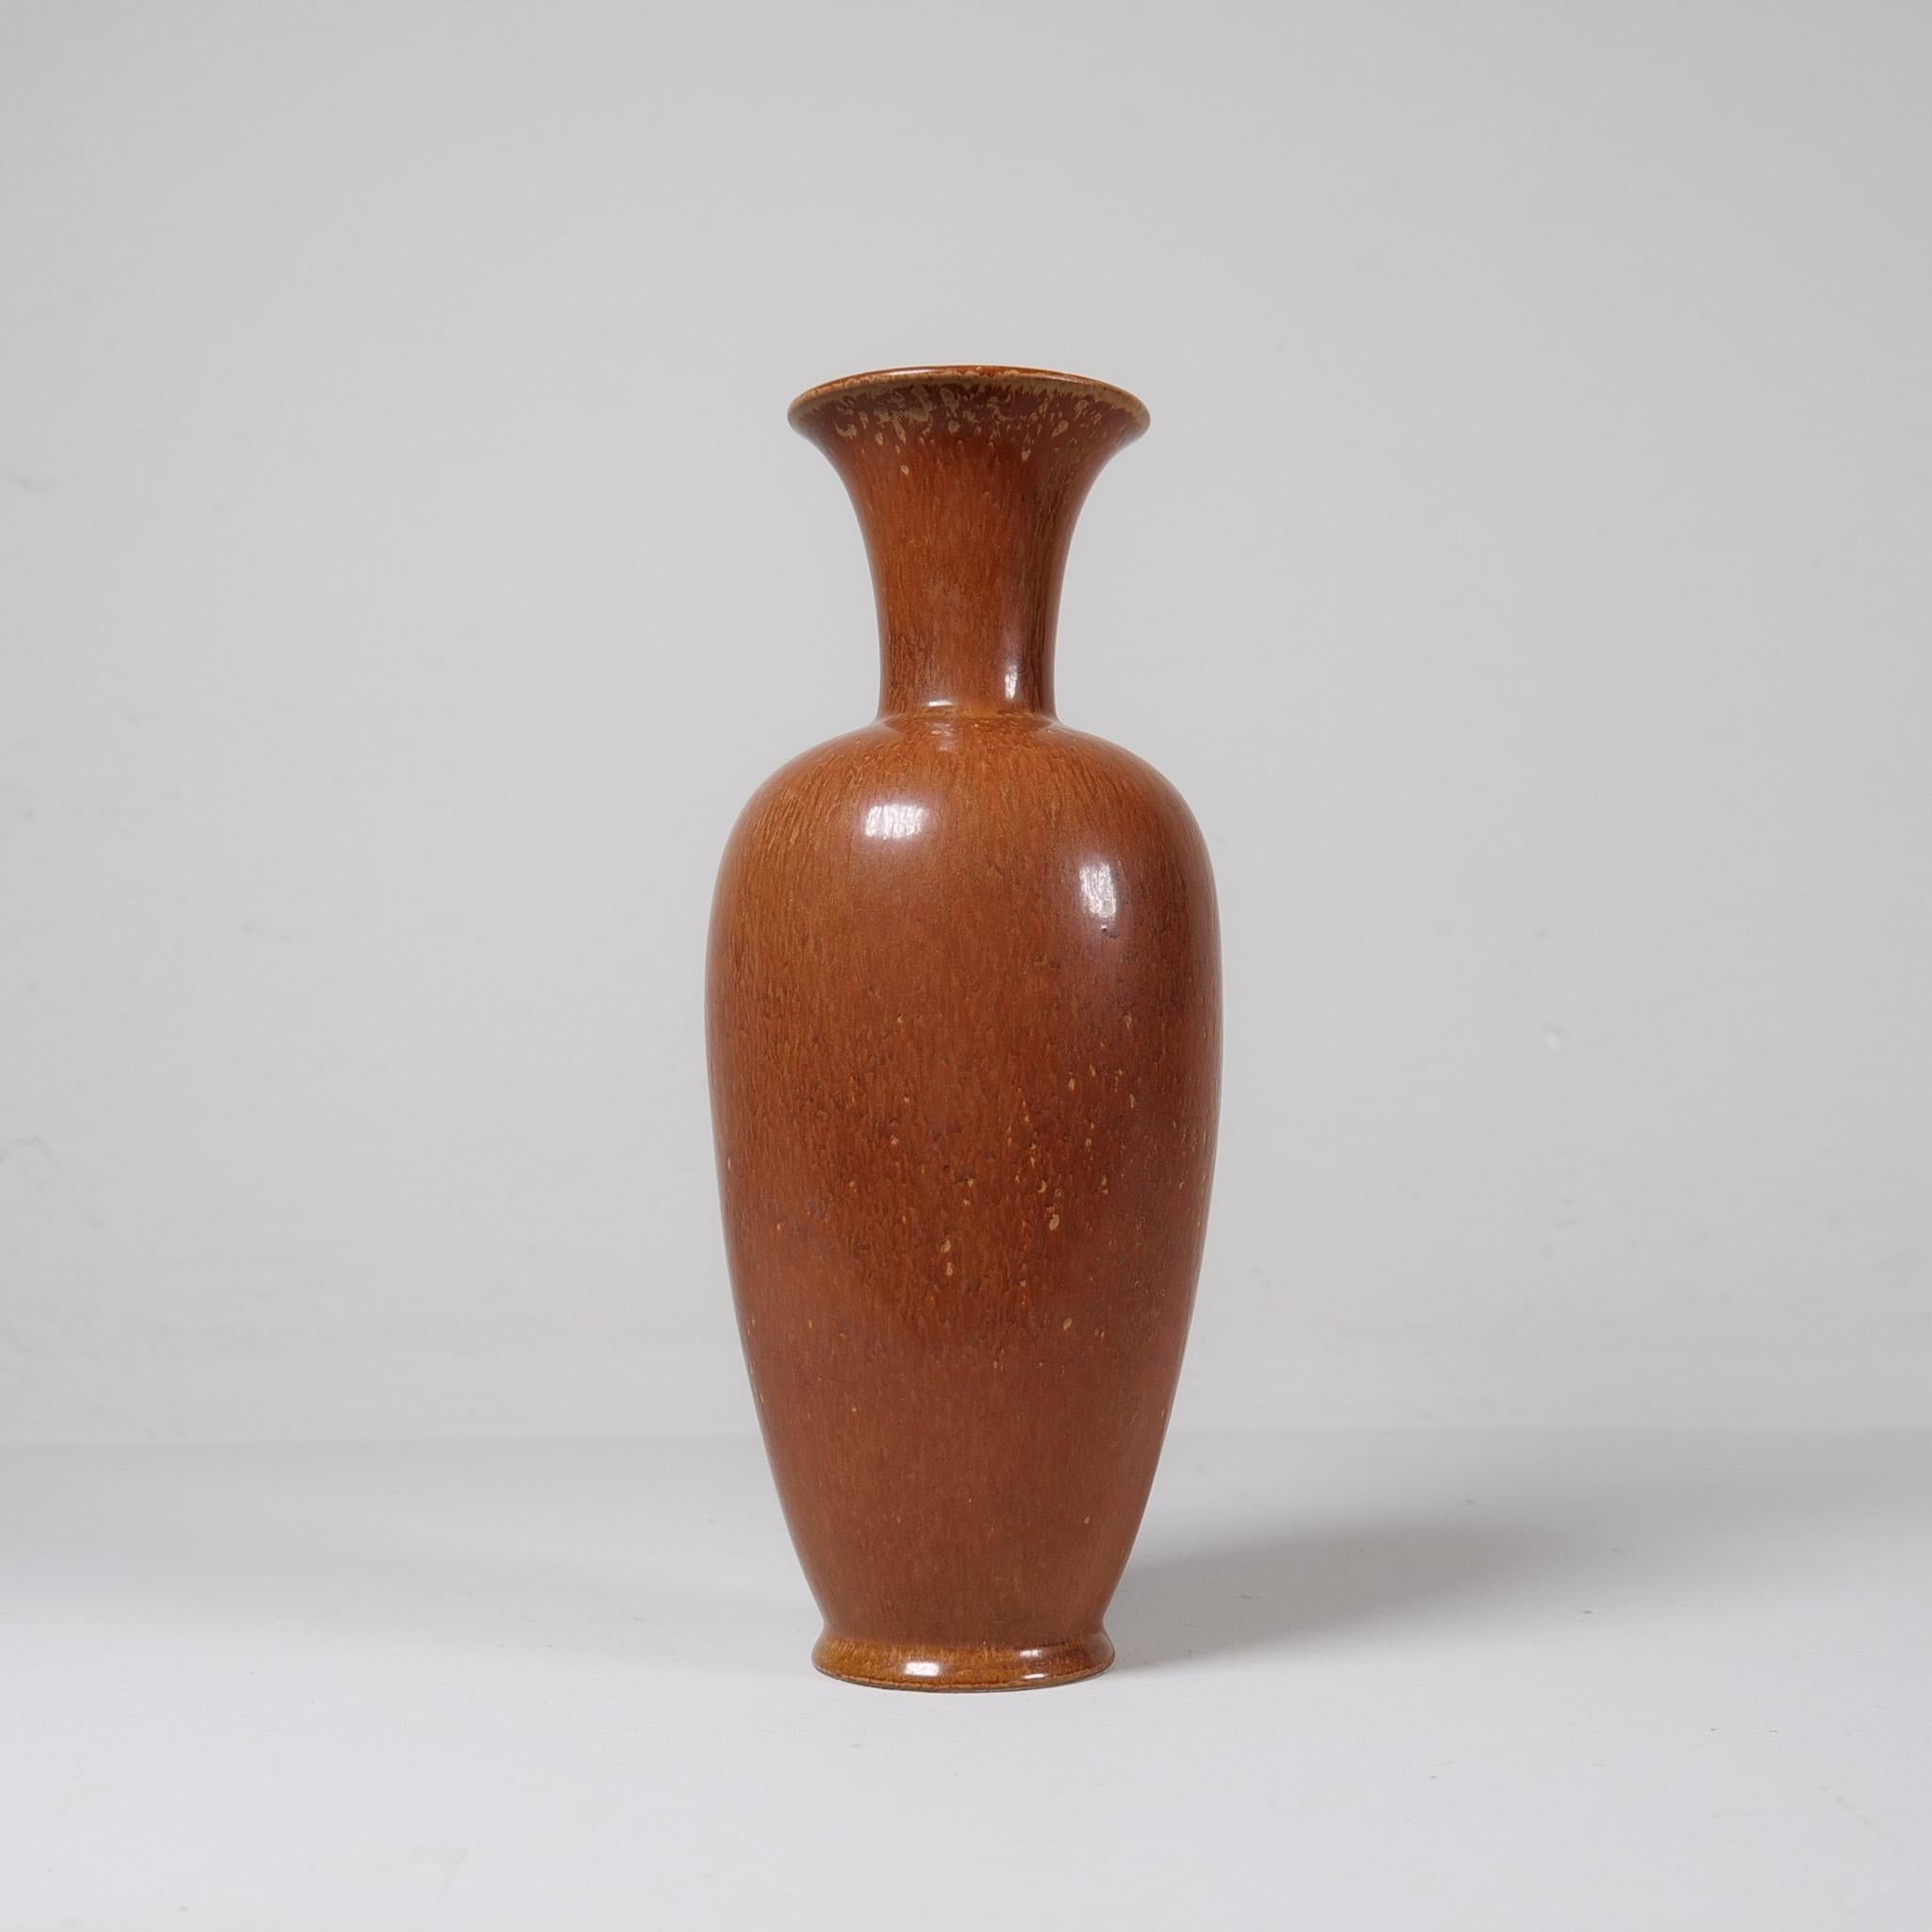 Ce grand vase en grès de Gunnar Nylund pour Rörstrand 1950 est doté d'une glaçure harefur brun clair. Il a en outre l'aspect époustouflant de l'excellent travail de Nylund. Il donne vraiment une bonne impression. 

Signé R GN SWEDEN.

Bon état